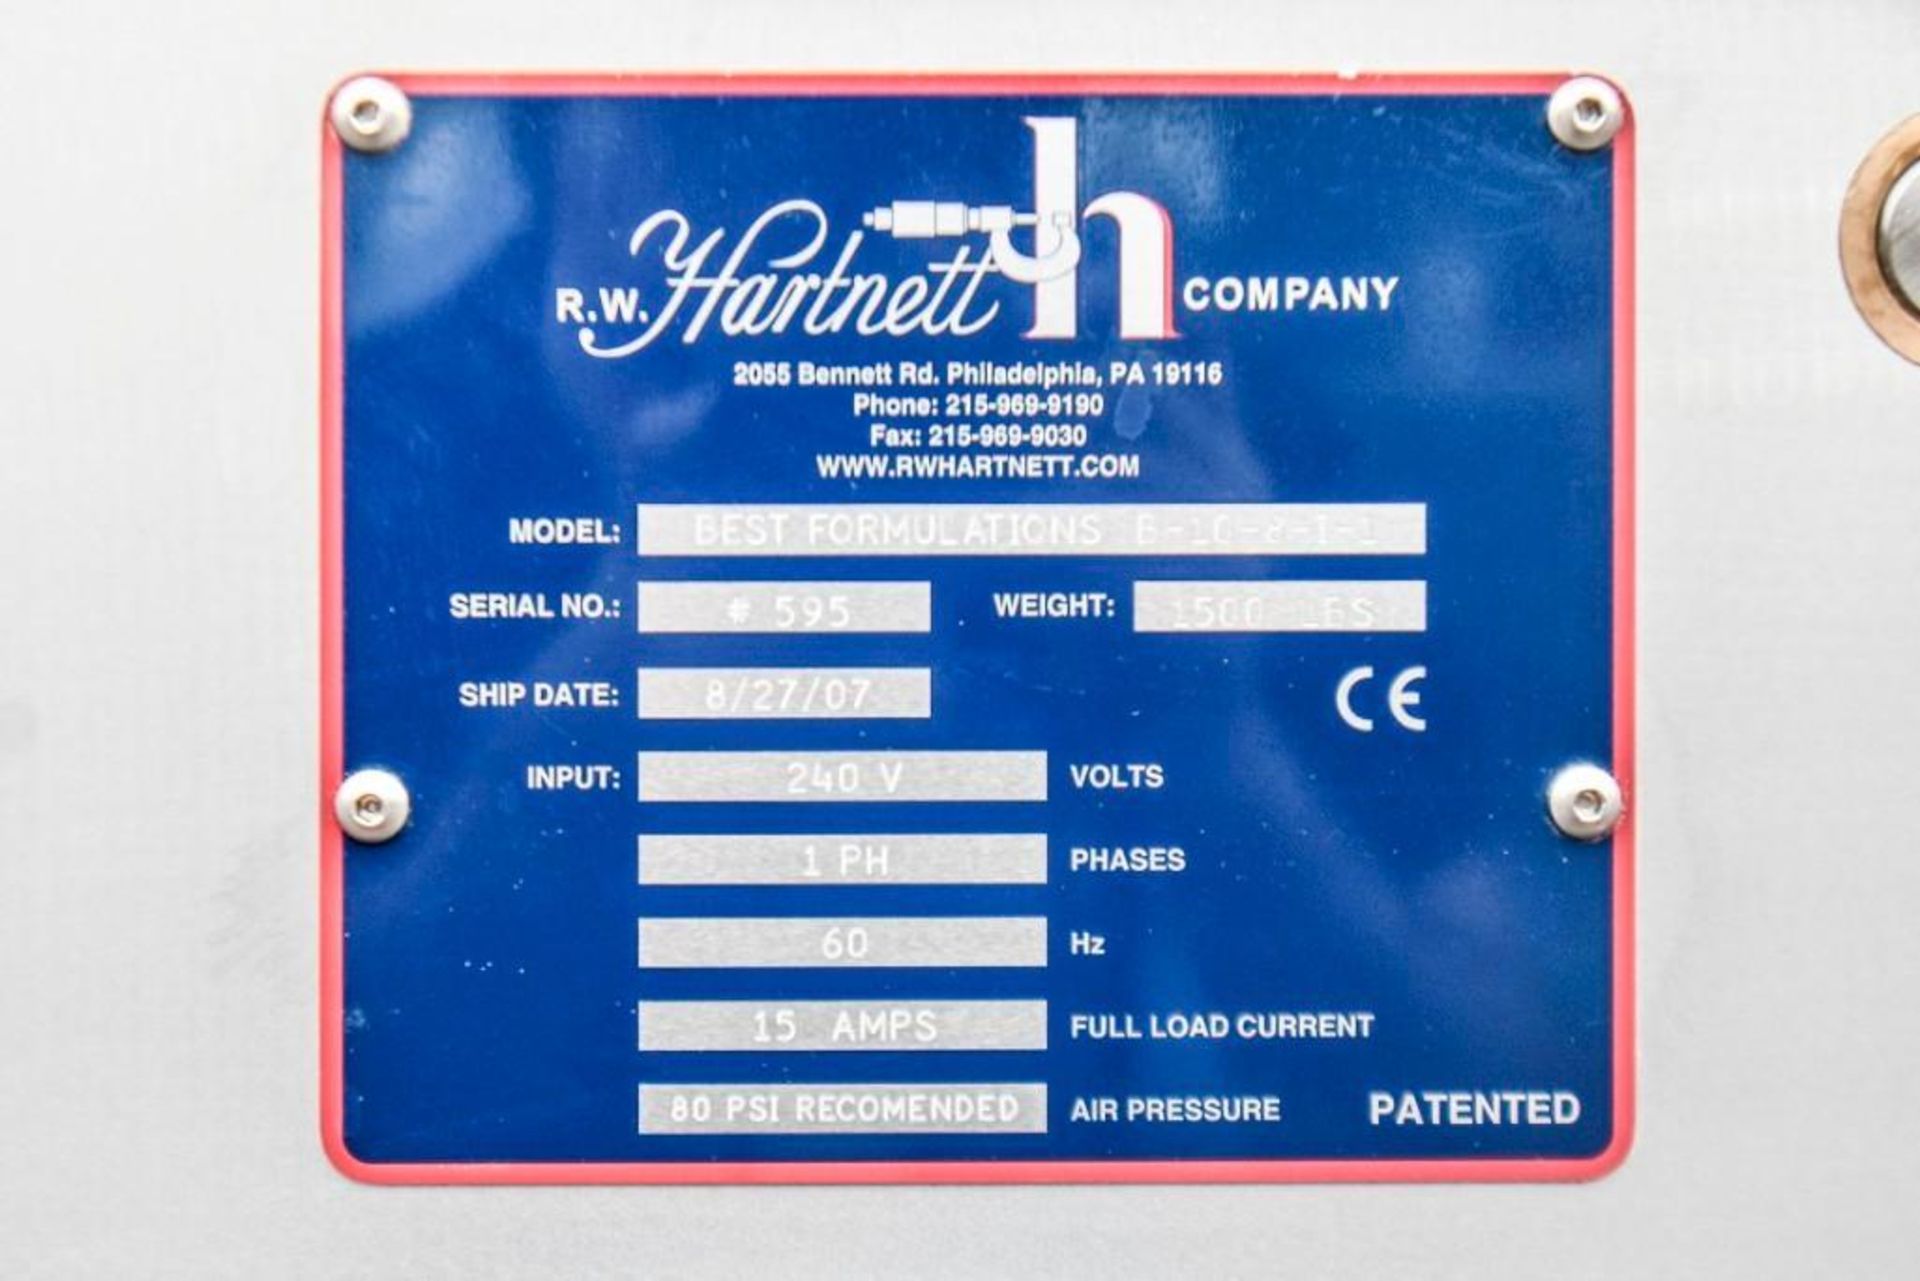 Hartnett Soft Gel Capsule Printer - Image 21 of 21